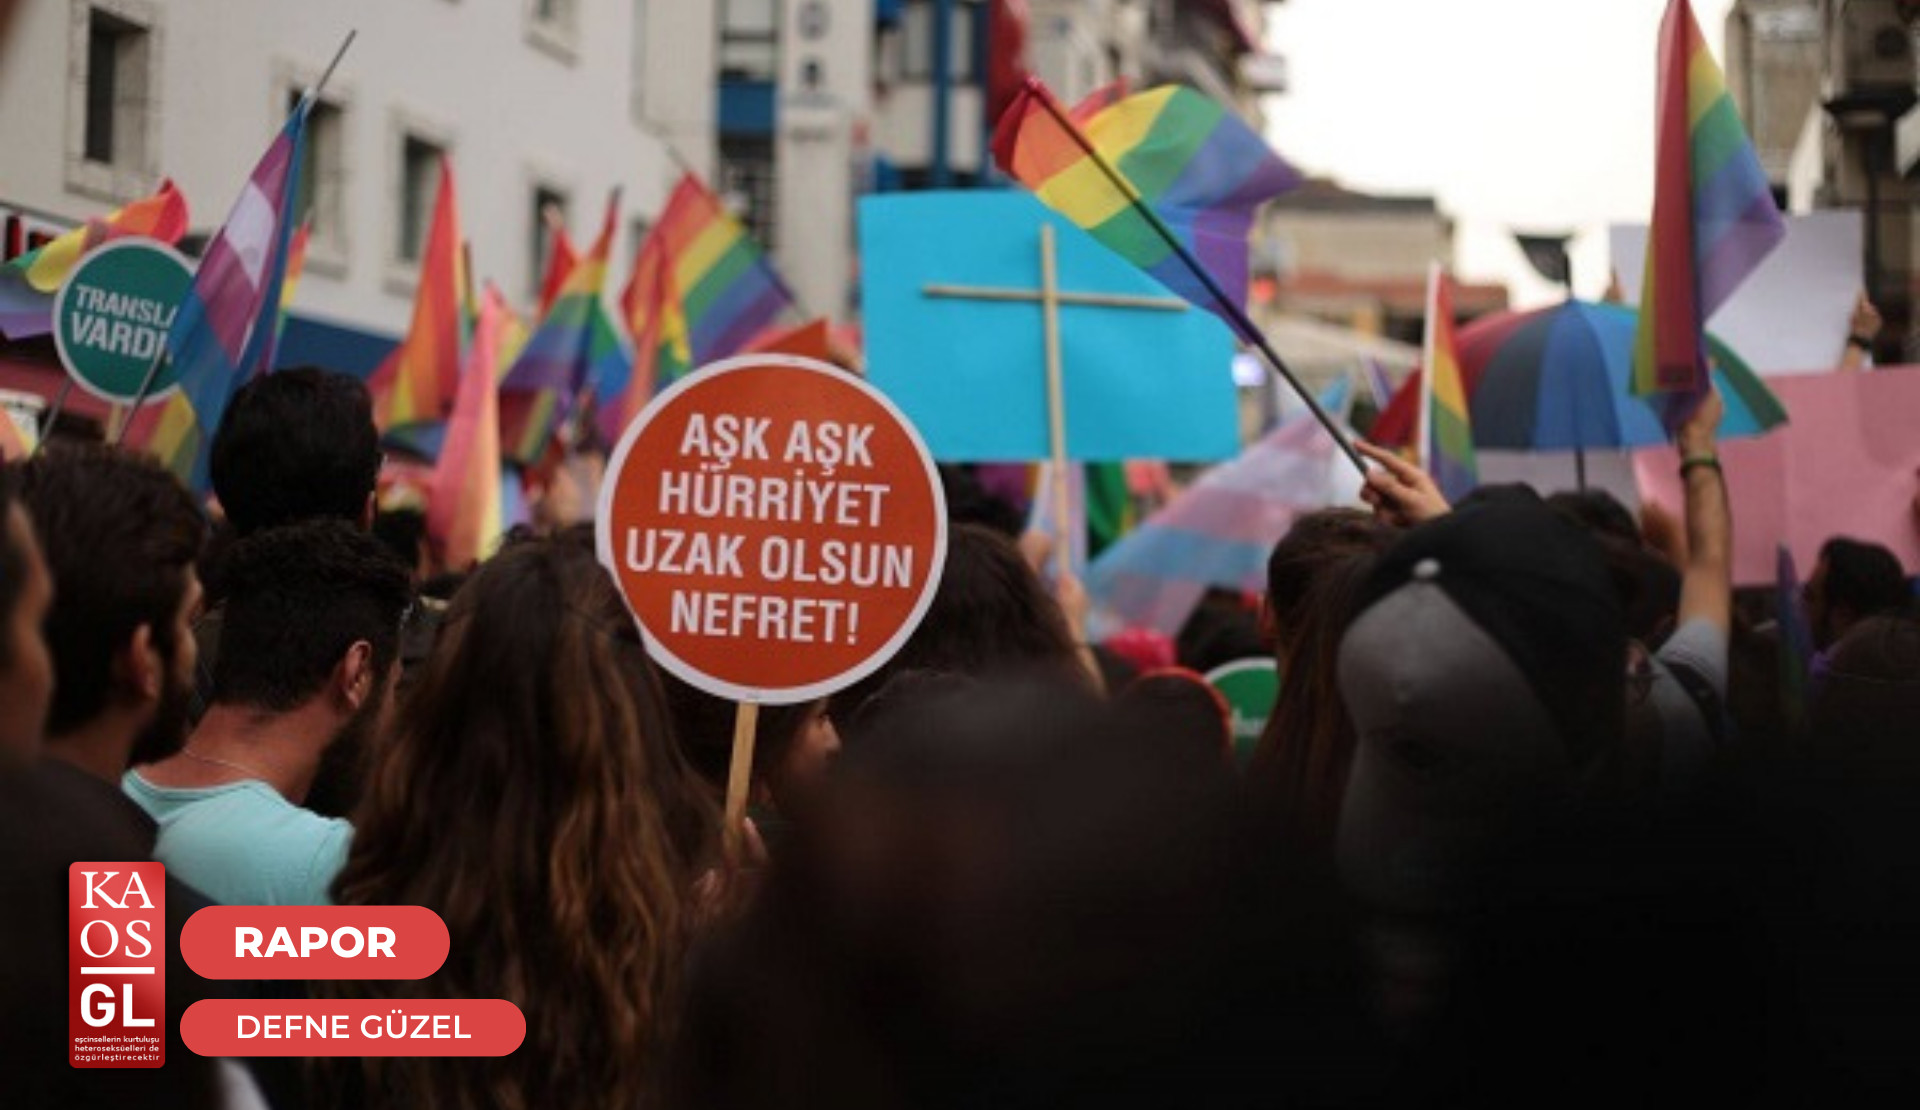 Mart’ta LGBTİ+’lara hak ihlalleri: Trans kadınların evi mühürlendi, Bayram Sokak 12 Platformu dayanışmaya çağırdı | Kaos GL - LGBTİ+ Haber Portalı Haber